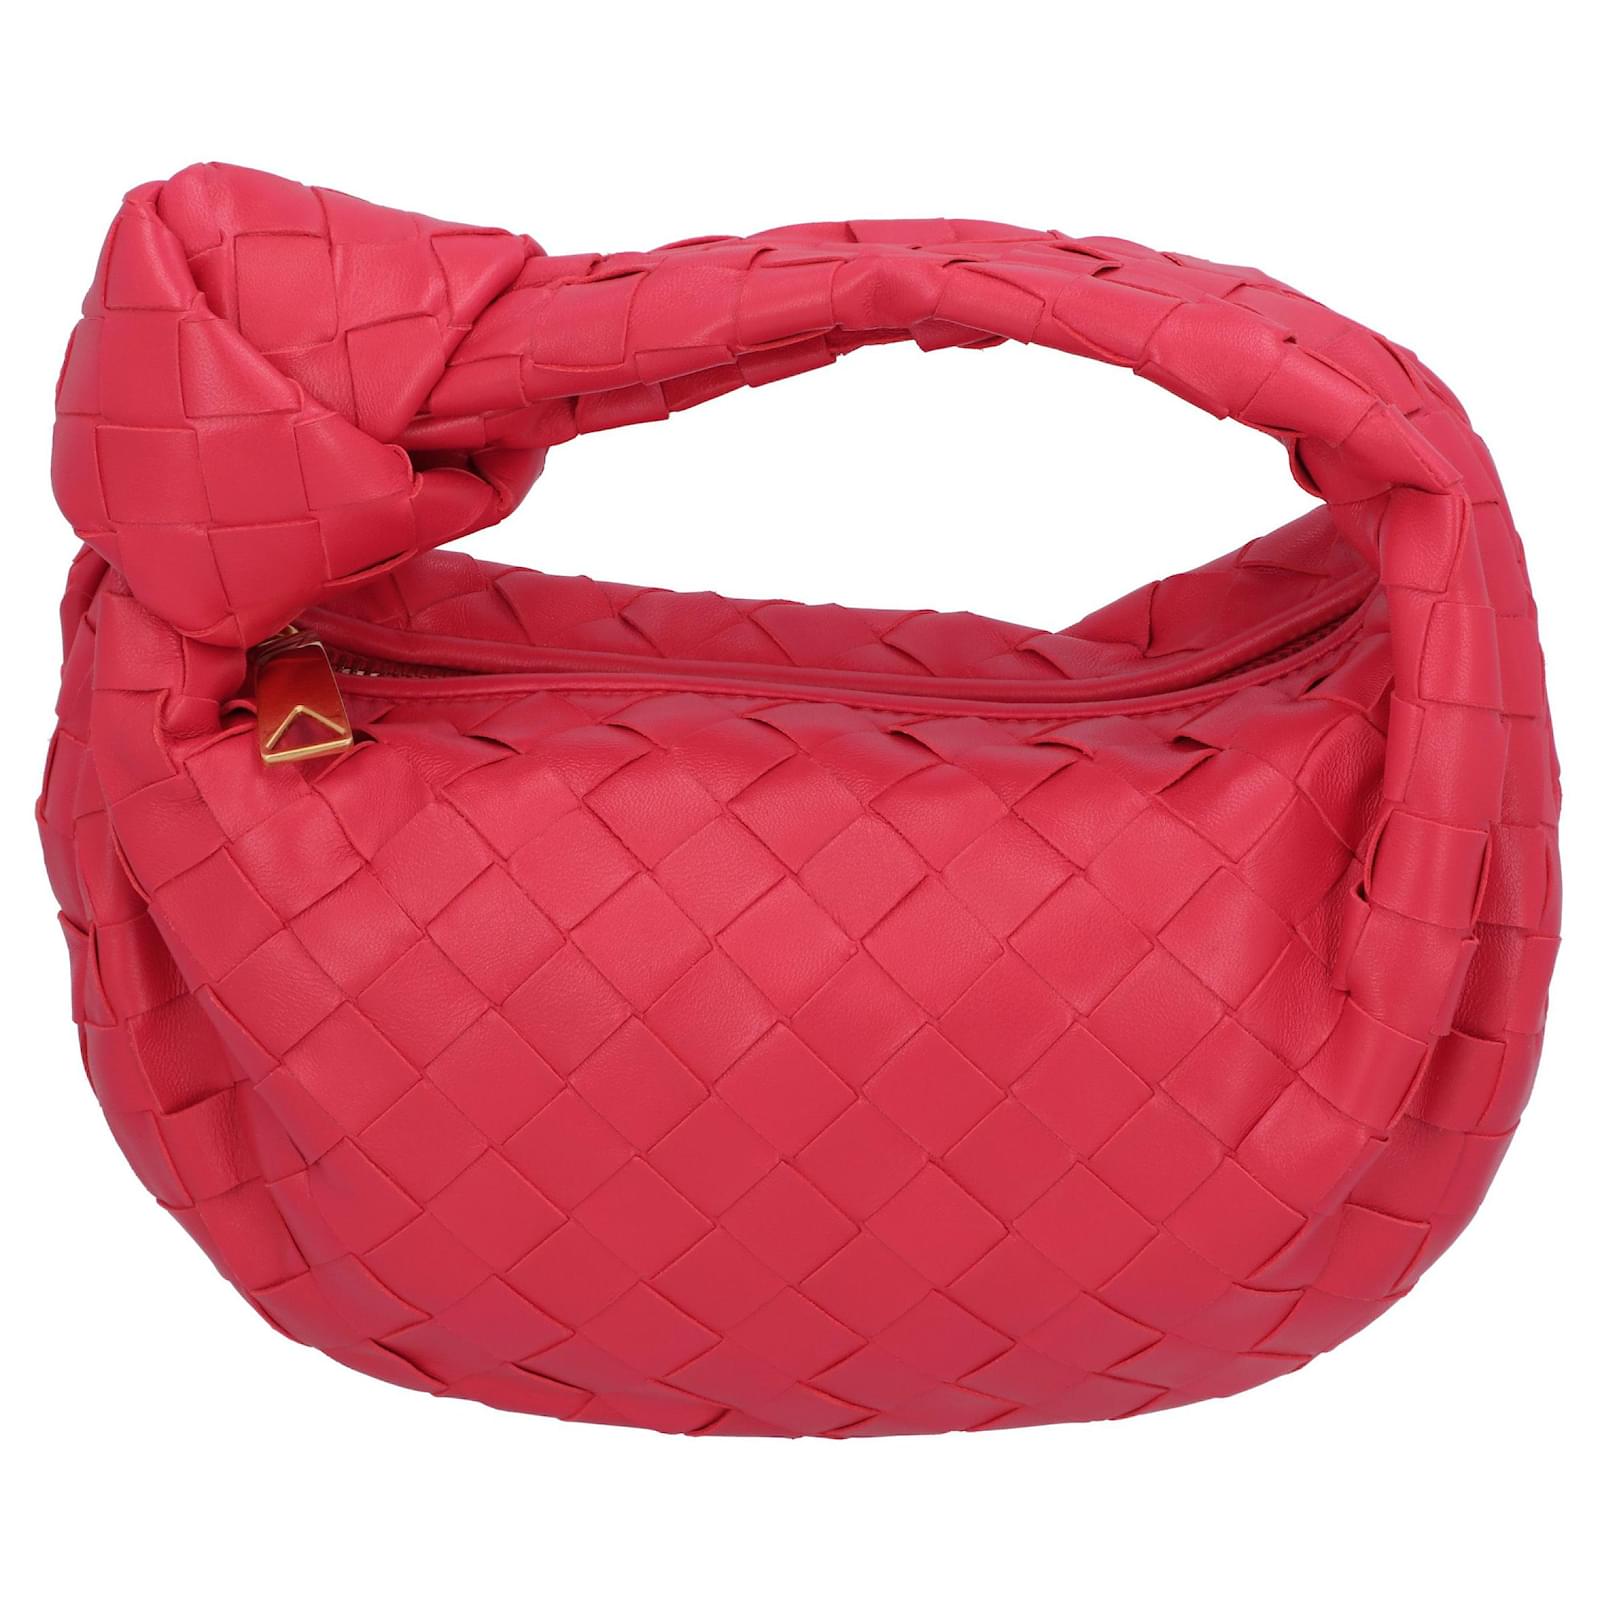 Bottega Veneta Women's Mini Jodie Bag